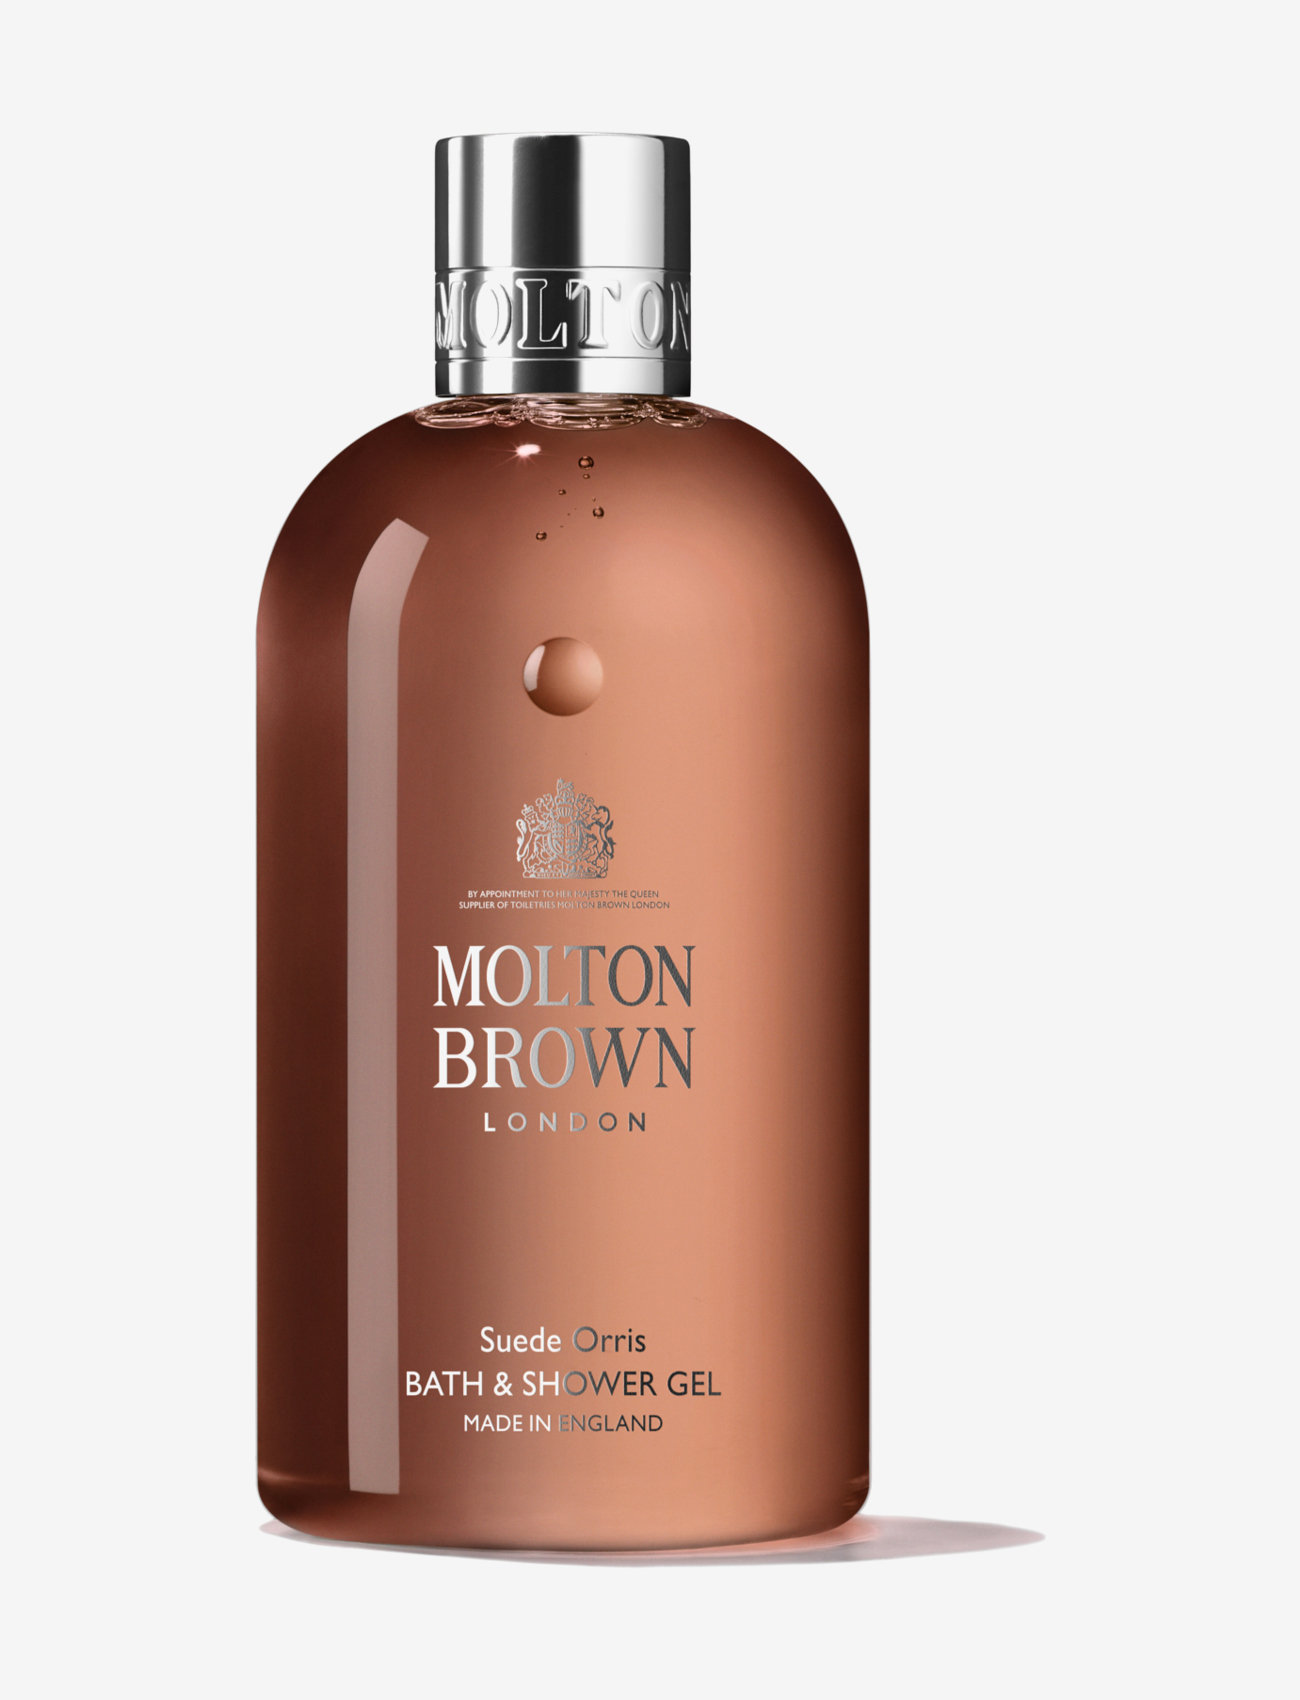 Molton Brown Orris Bath & Shower Gel gel | Boozt.com